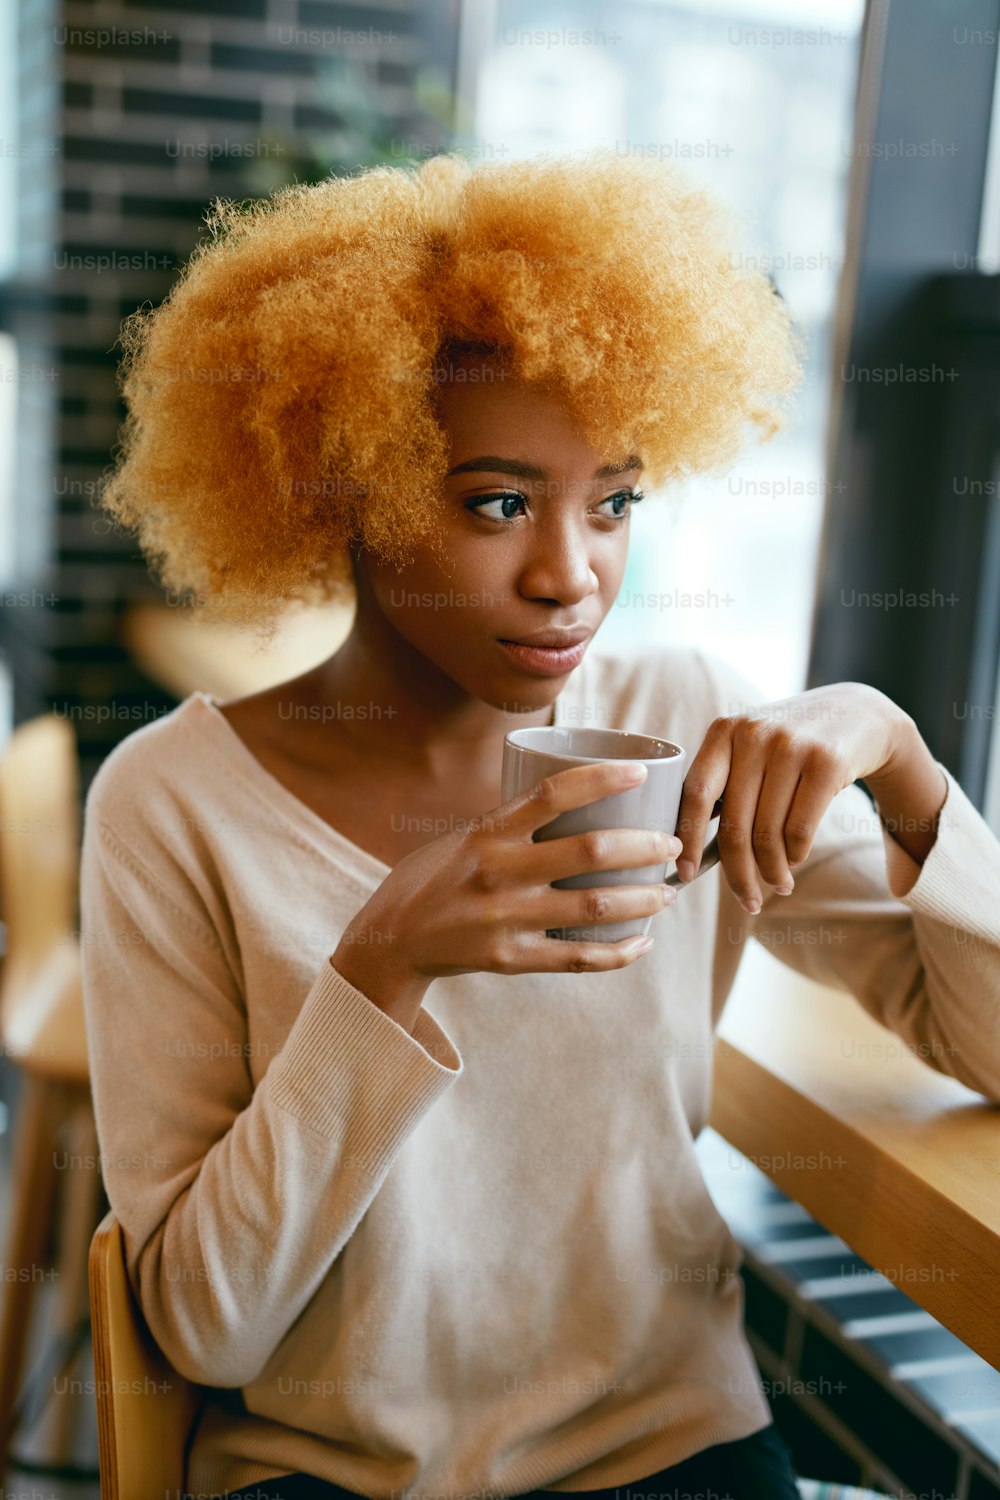 Bella ragazza che beve caffè in un bar vicino alla finestra. Ritratto Di Giovane Donna Africana Sorridente In Abiti Casual Con Cu0p Di Bevanda Calda In Cafe. Alta risoluzione